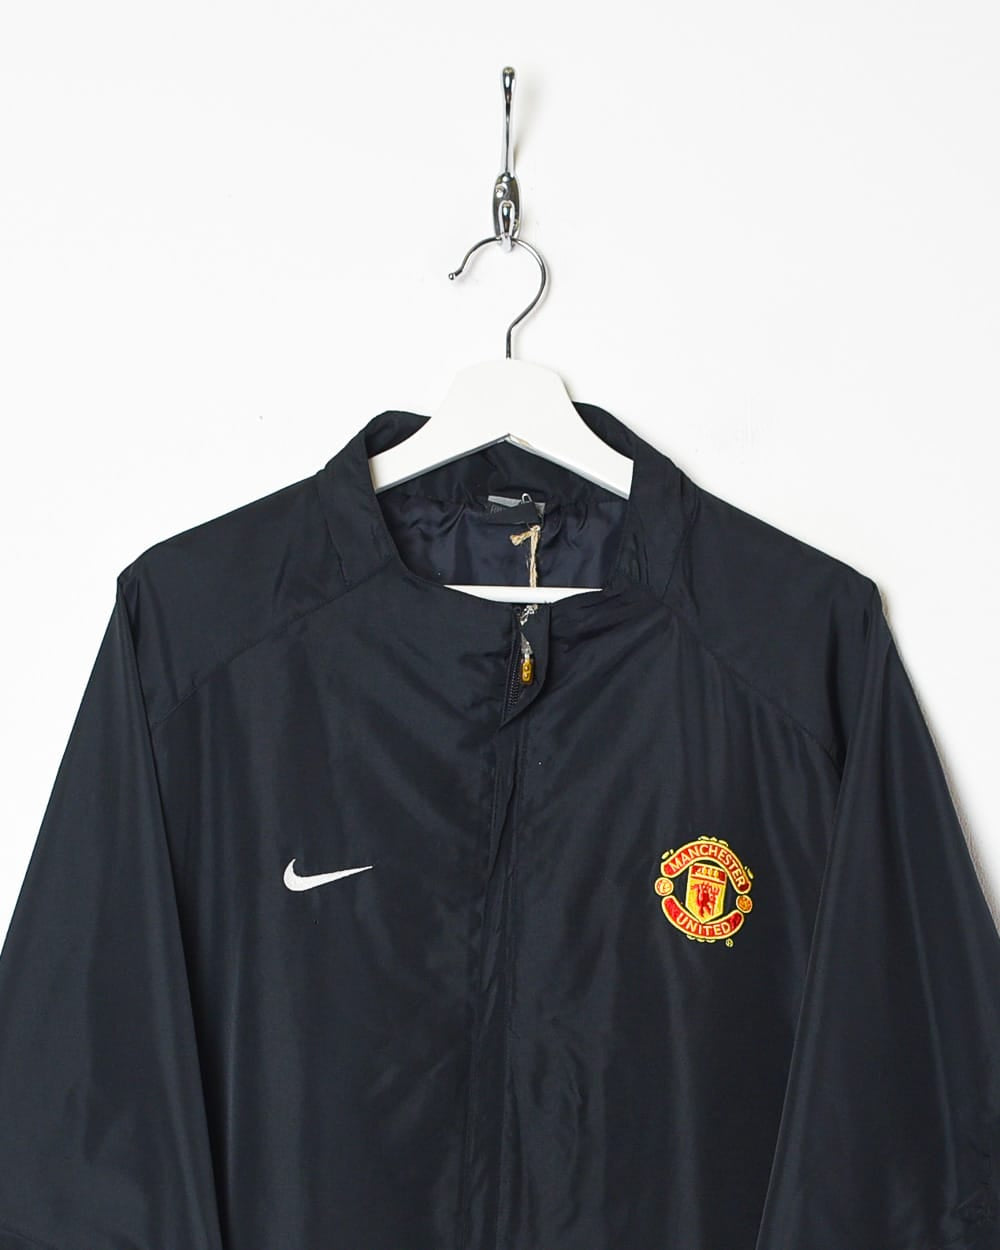 Black Nike Manchester United Warmup Jacket - XX-Large